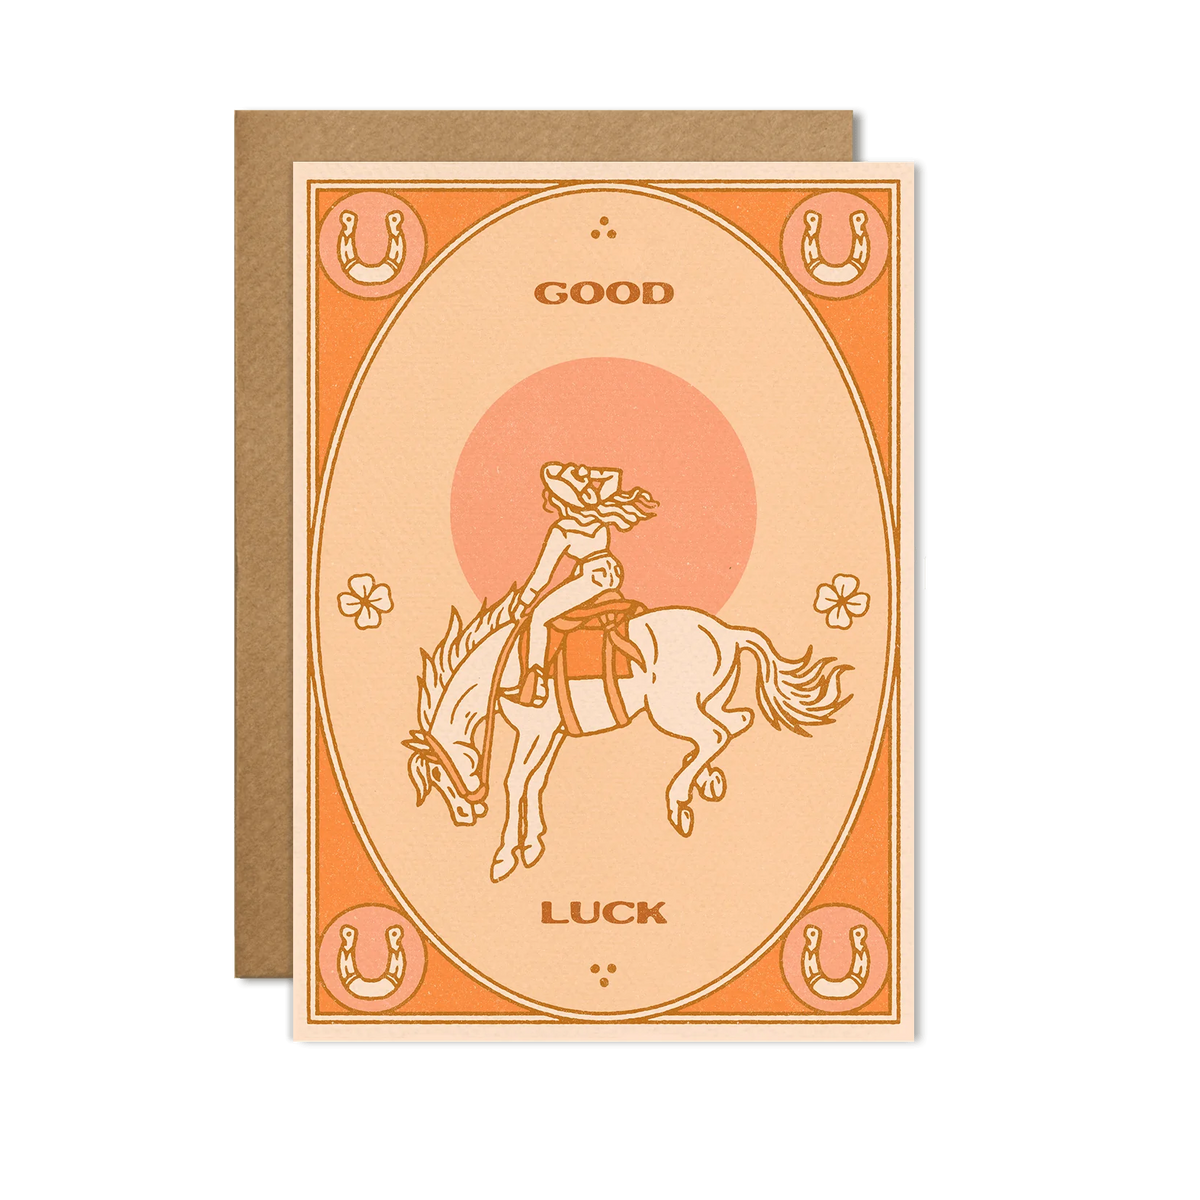 Good Luck Card